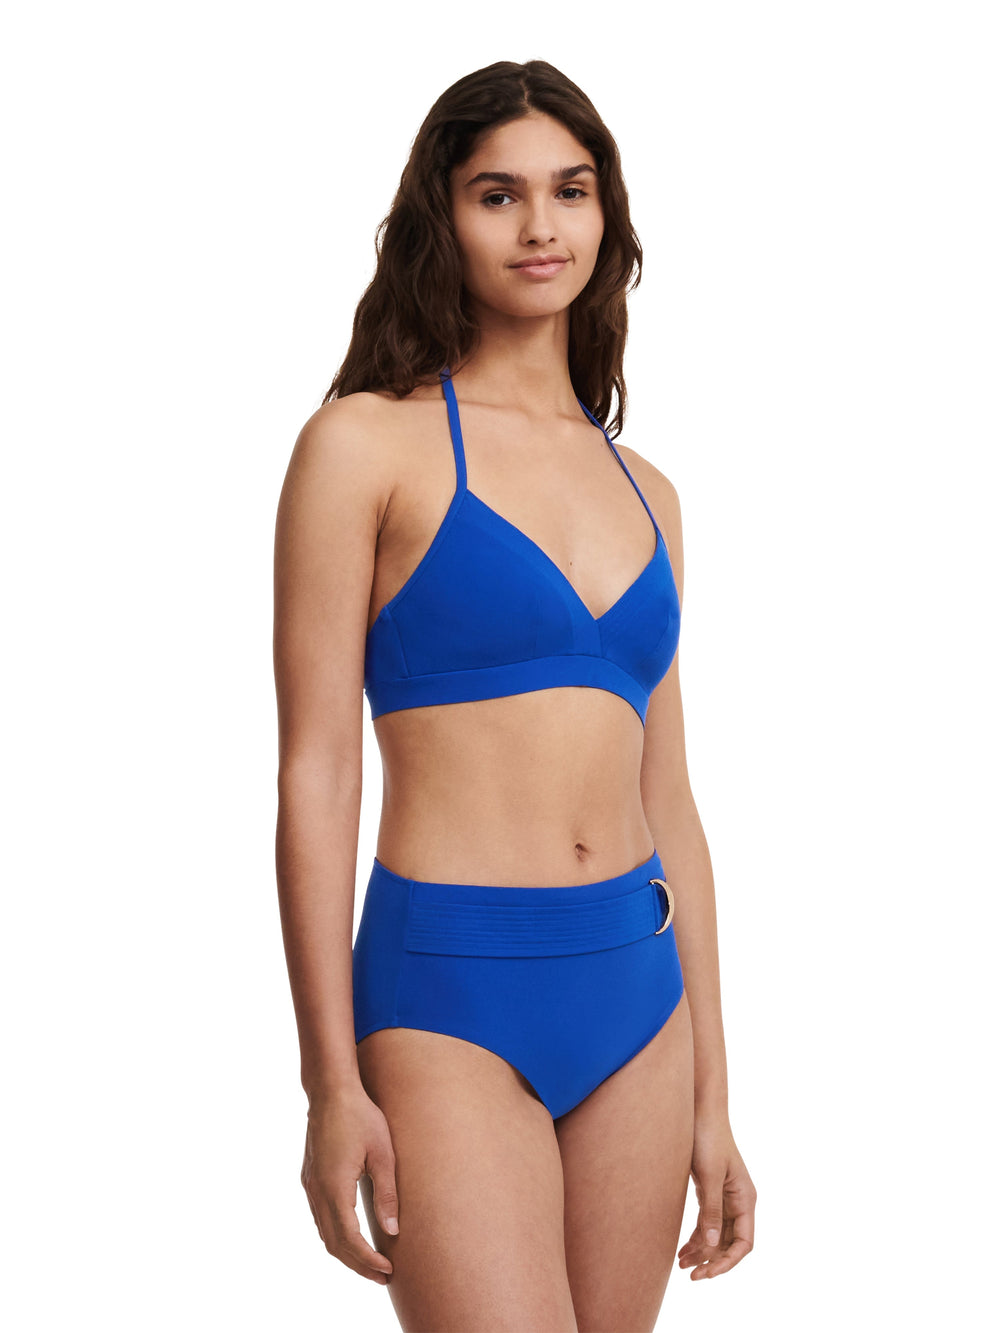 Chantelle Trajes de baño - Braguita de bikini completa Celestial Braguita de bikini completa azul profundo Chantelle Trajes de baño